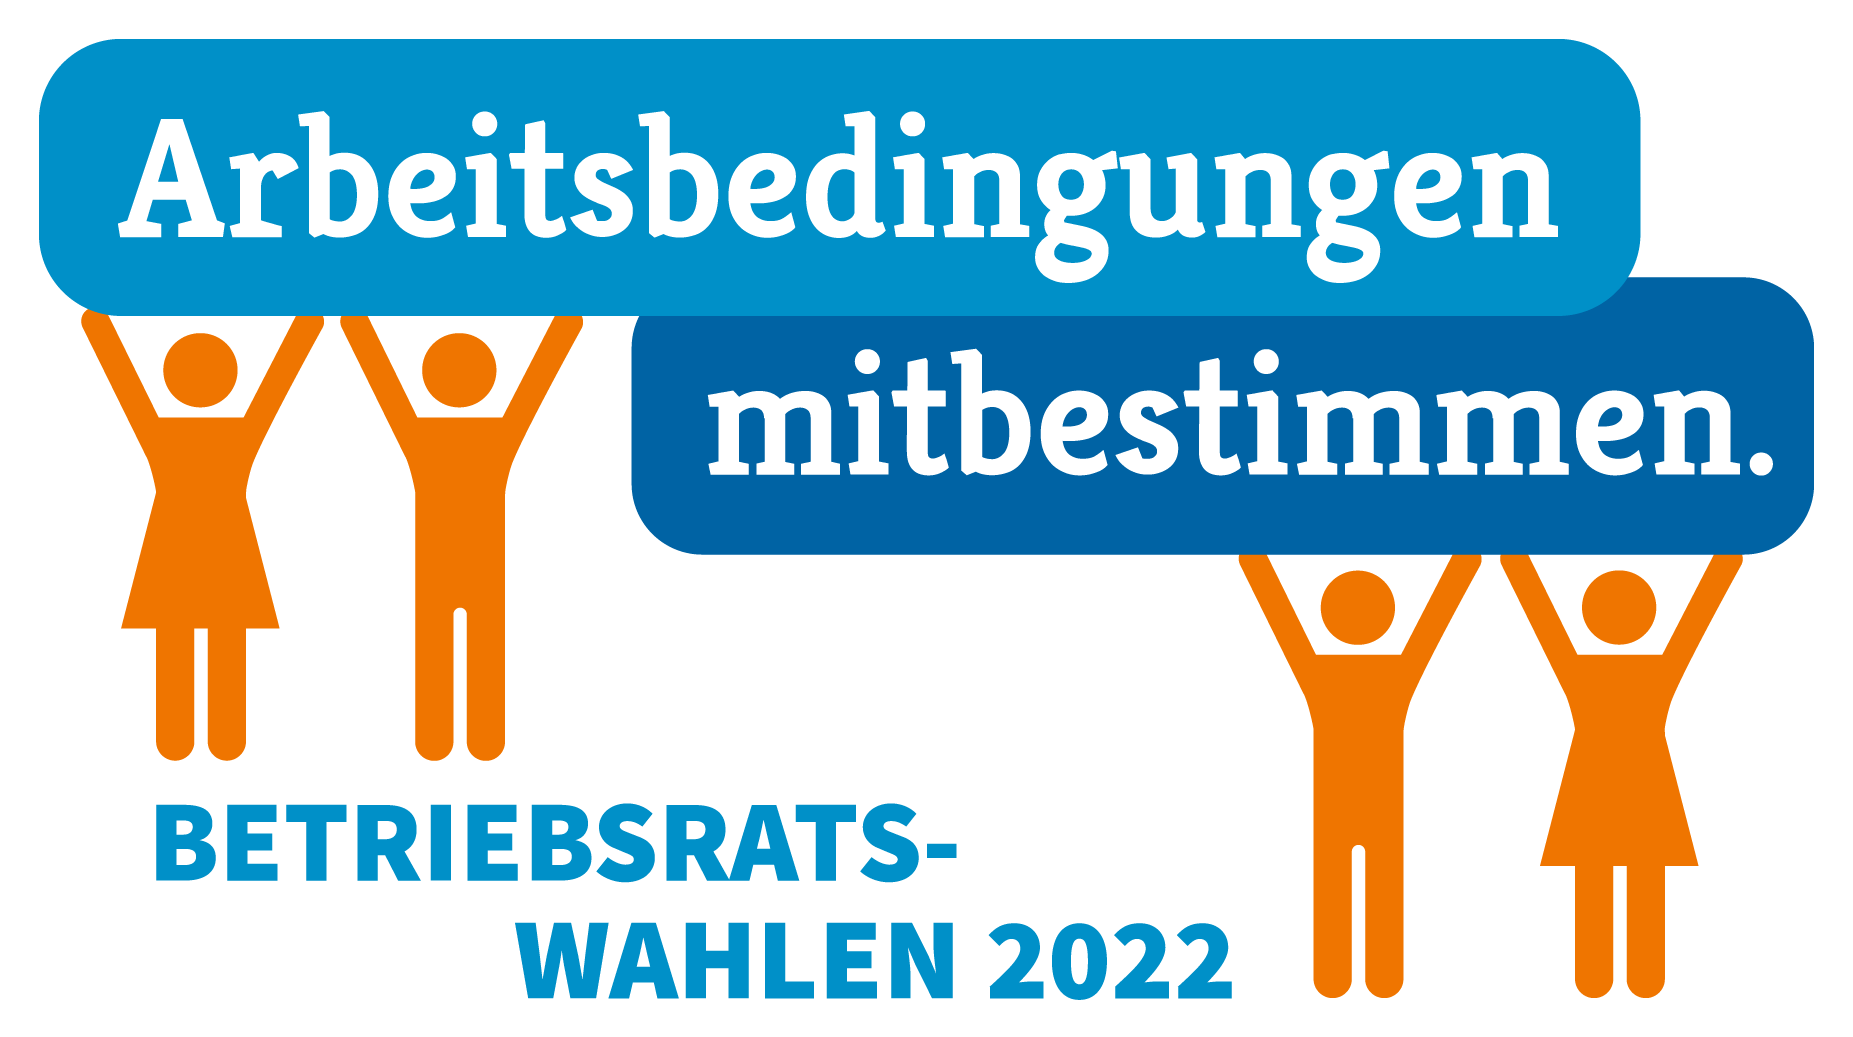 Betriebsratswahlen 2022 - Wort-Bild-Marke